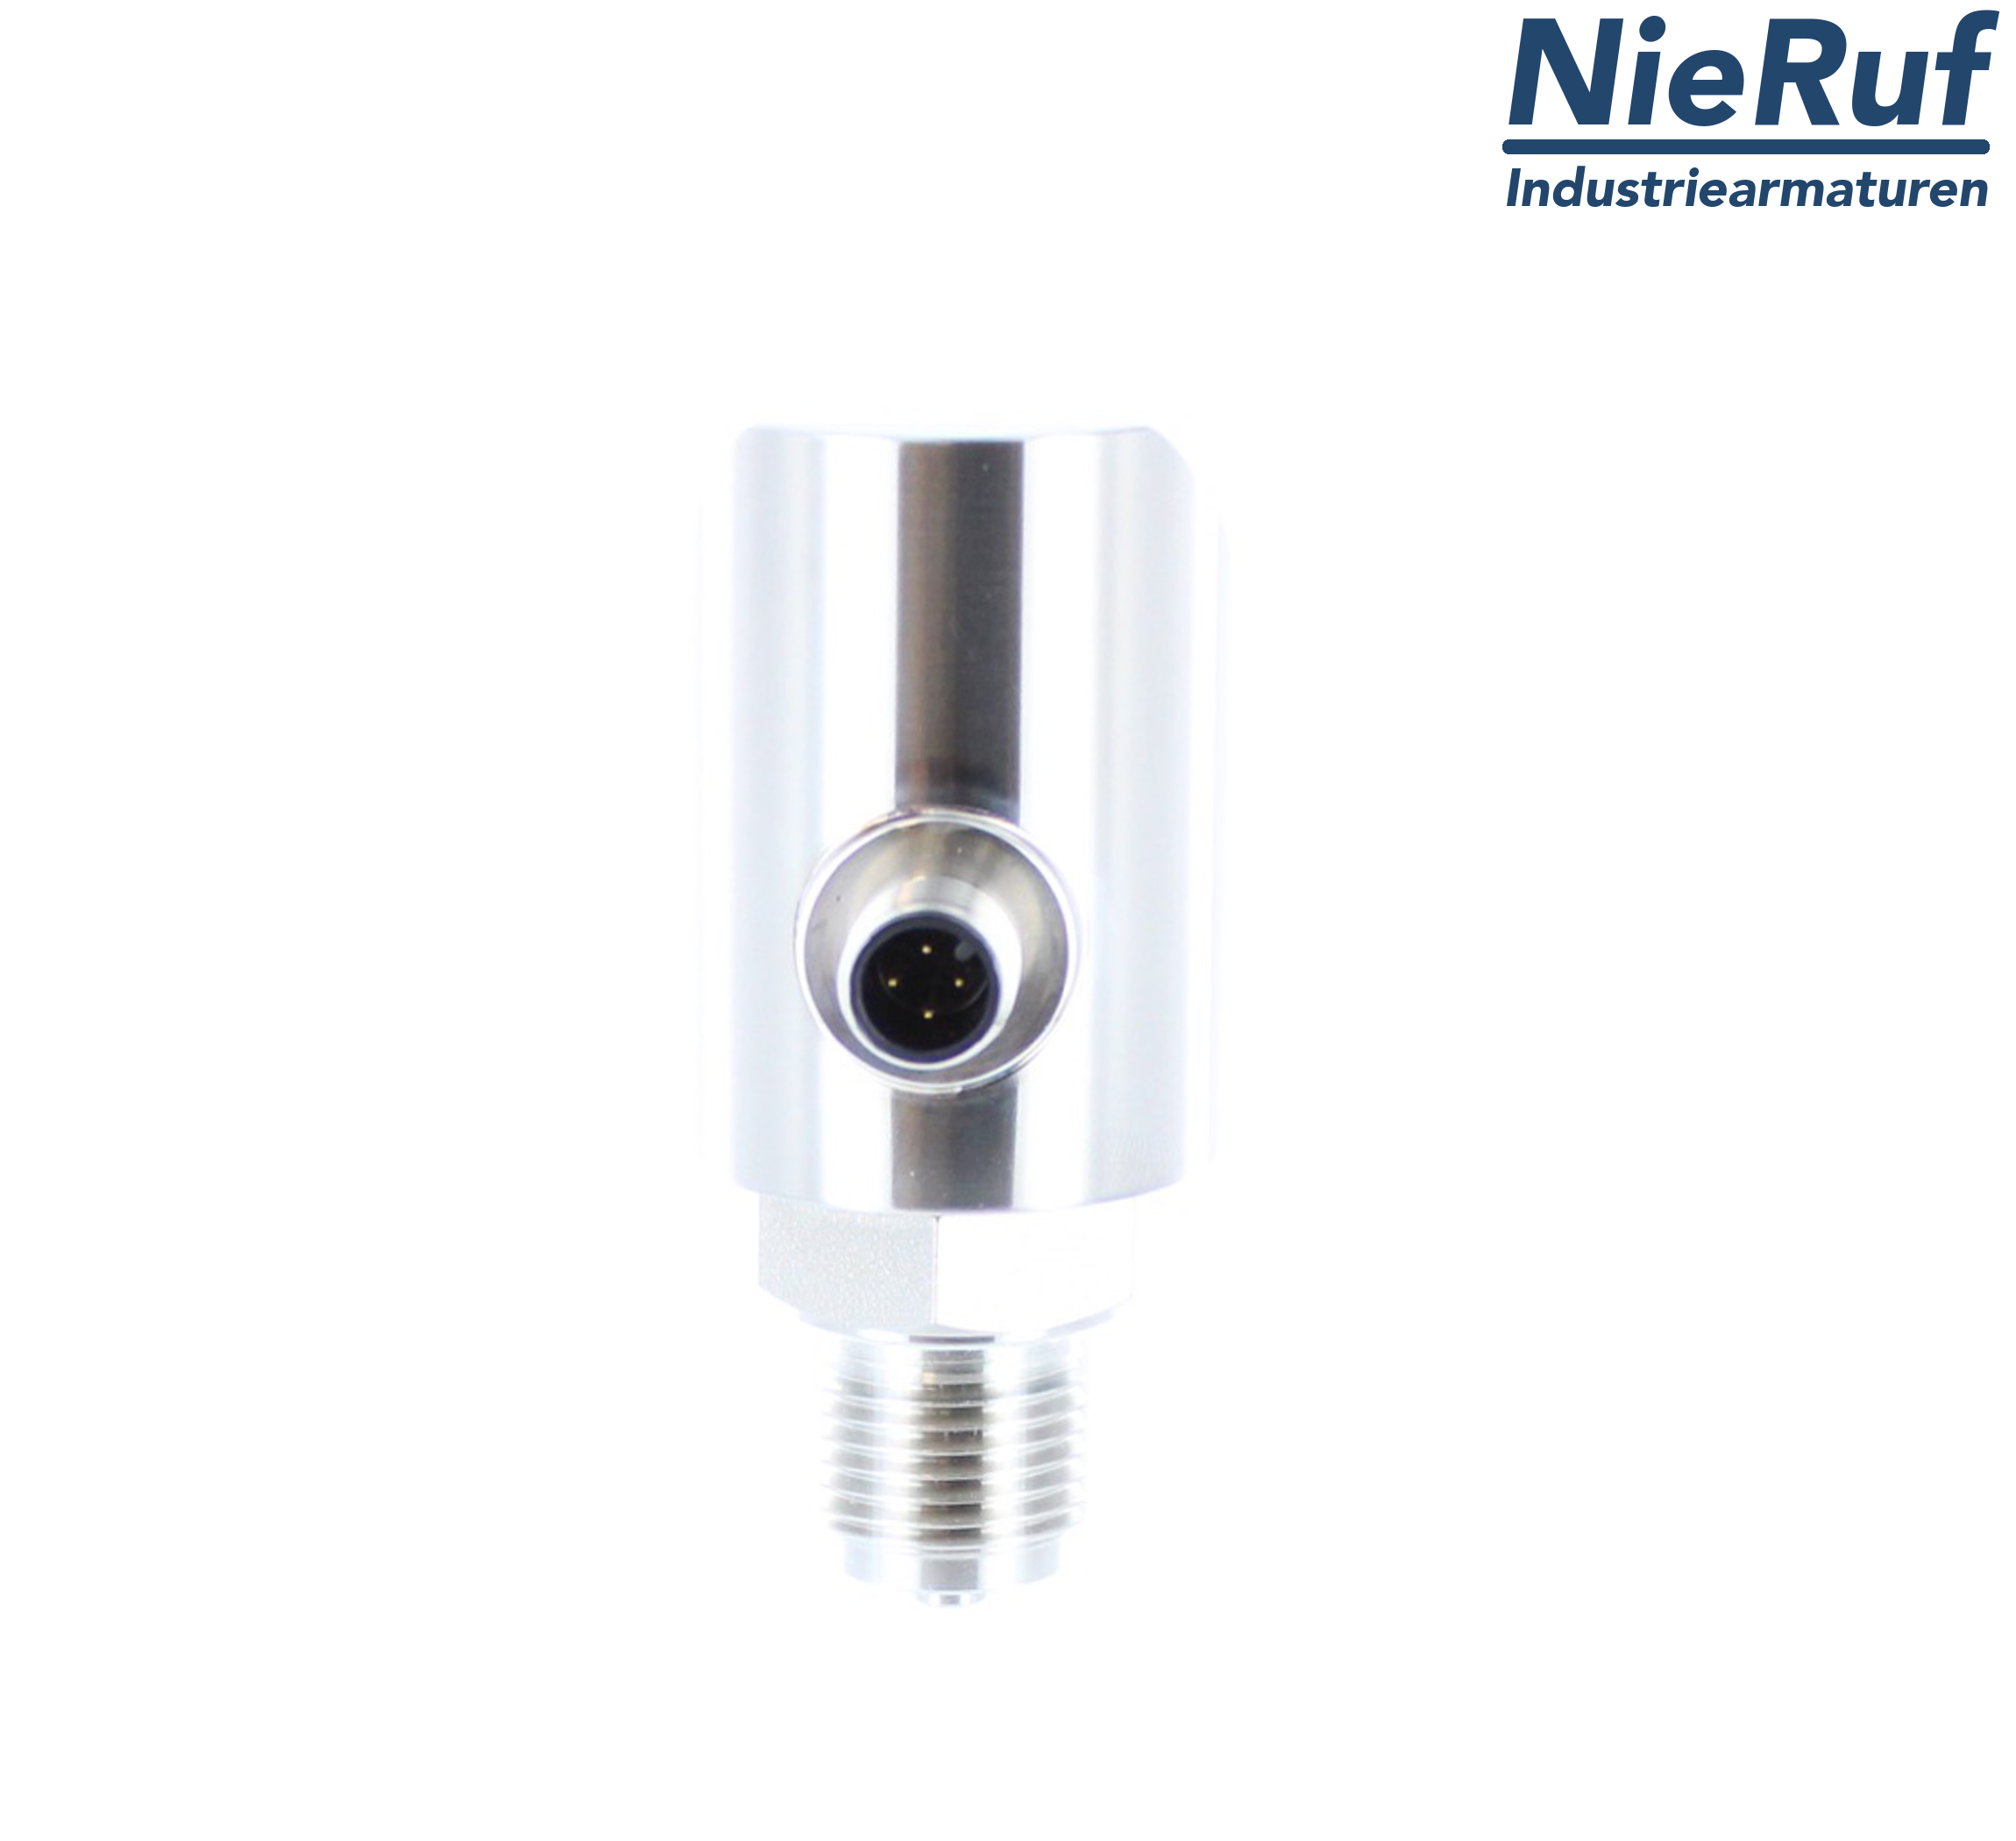 digital pressure sensor G 1/4" B 4-wire: 1xPNP, 1x4 - 20mA, Desina FPM 0,0 - 160,0 bar